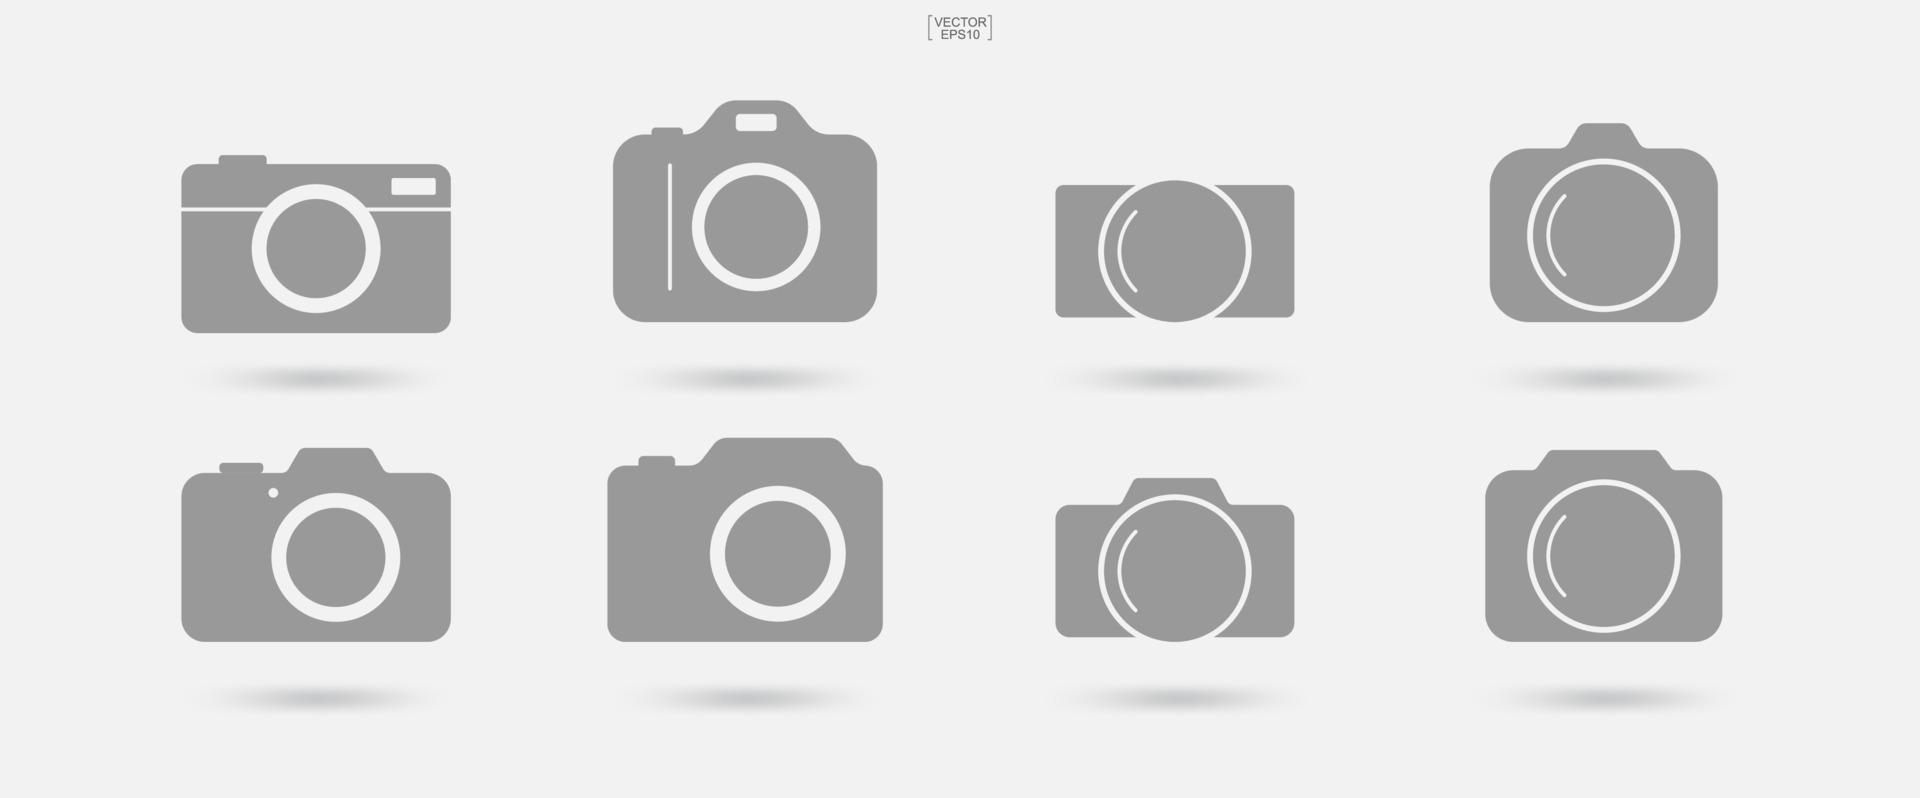 signe et symbole de la caméra. icône photo ou icône image. vecteur. vecteur